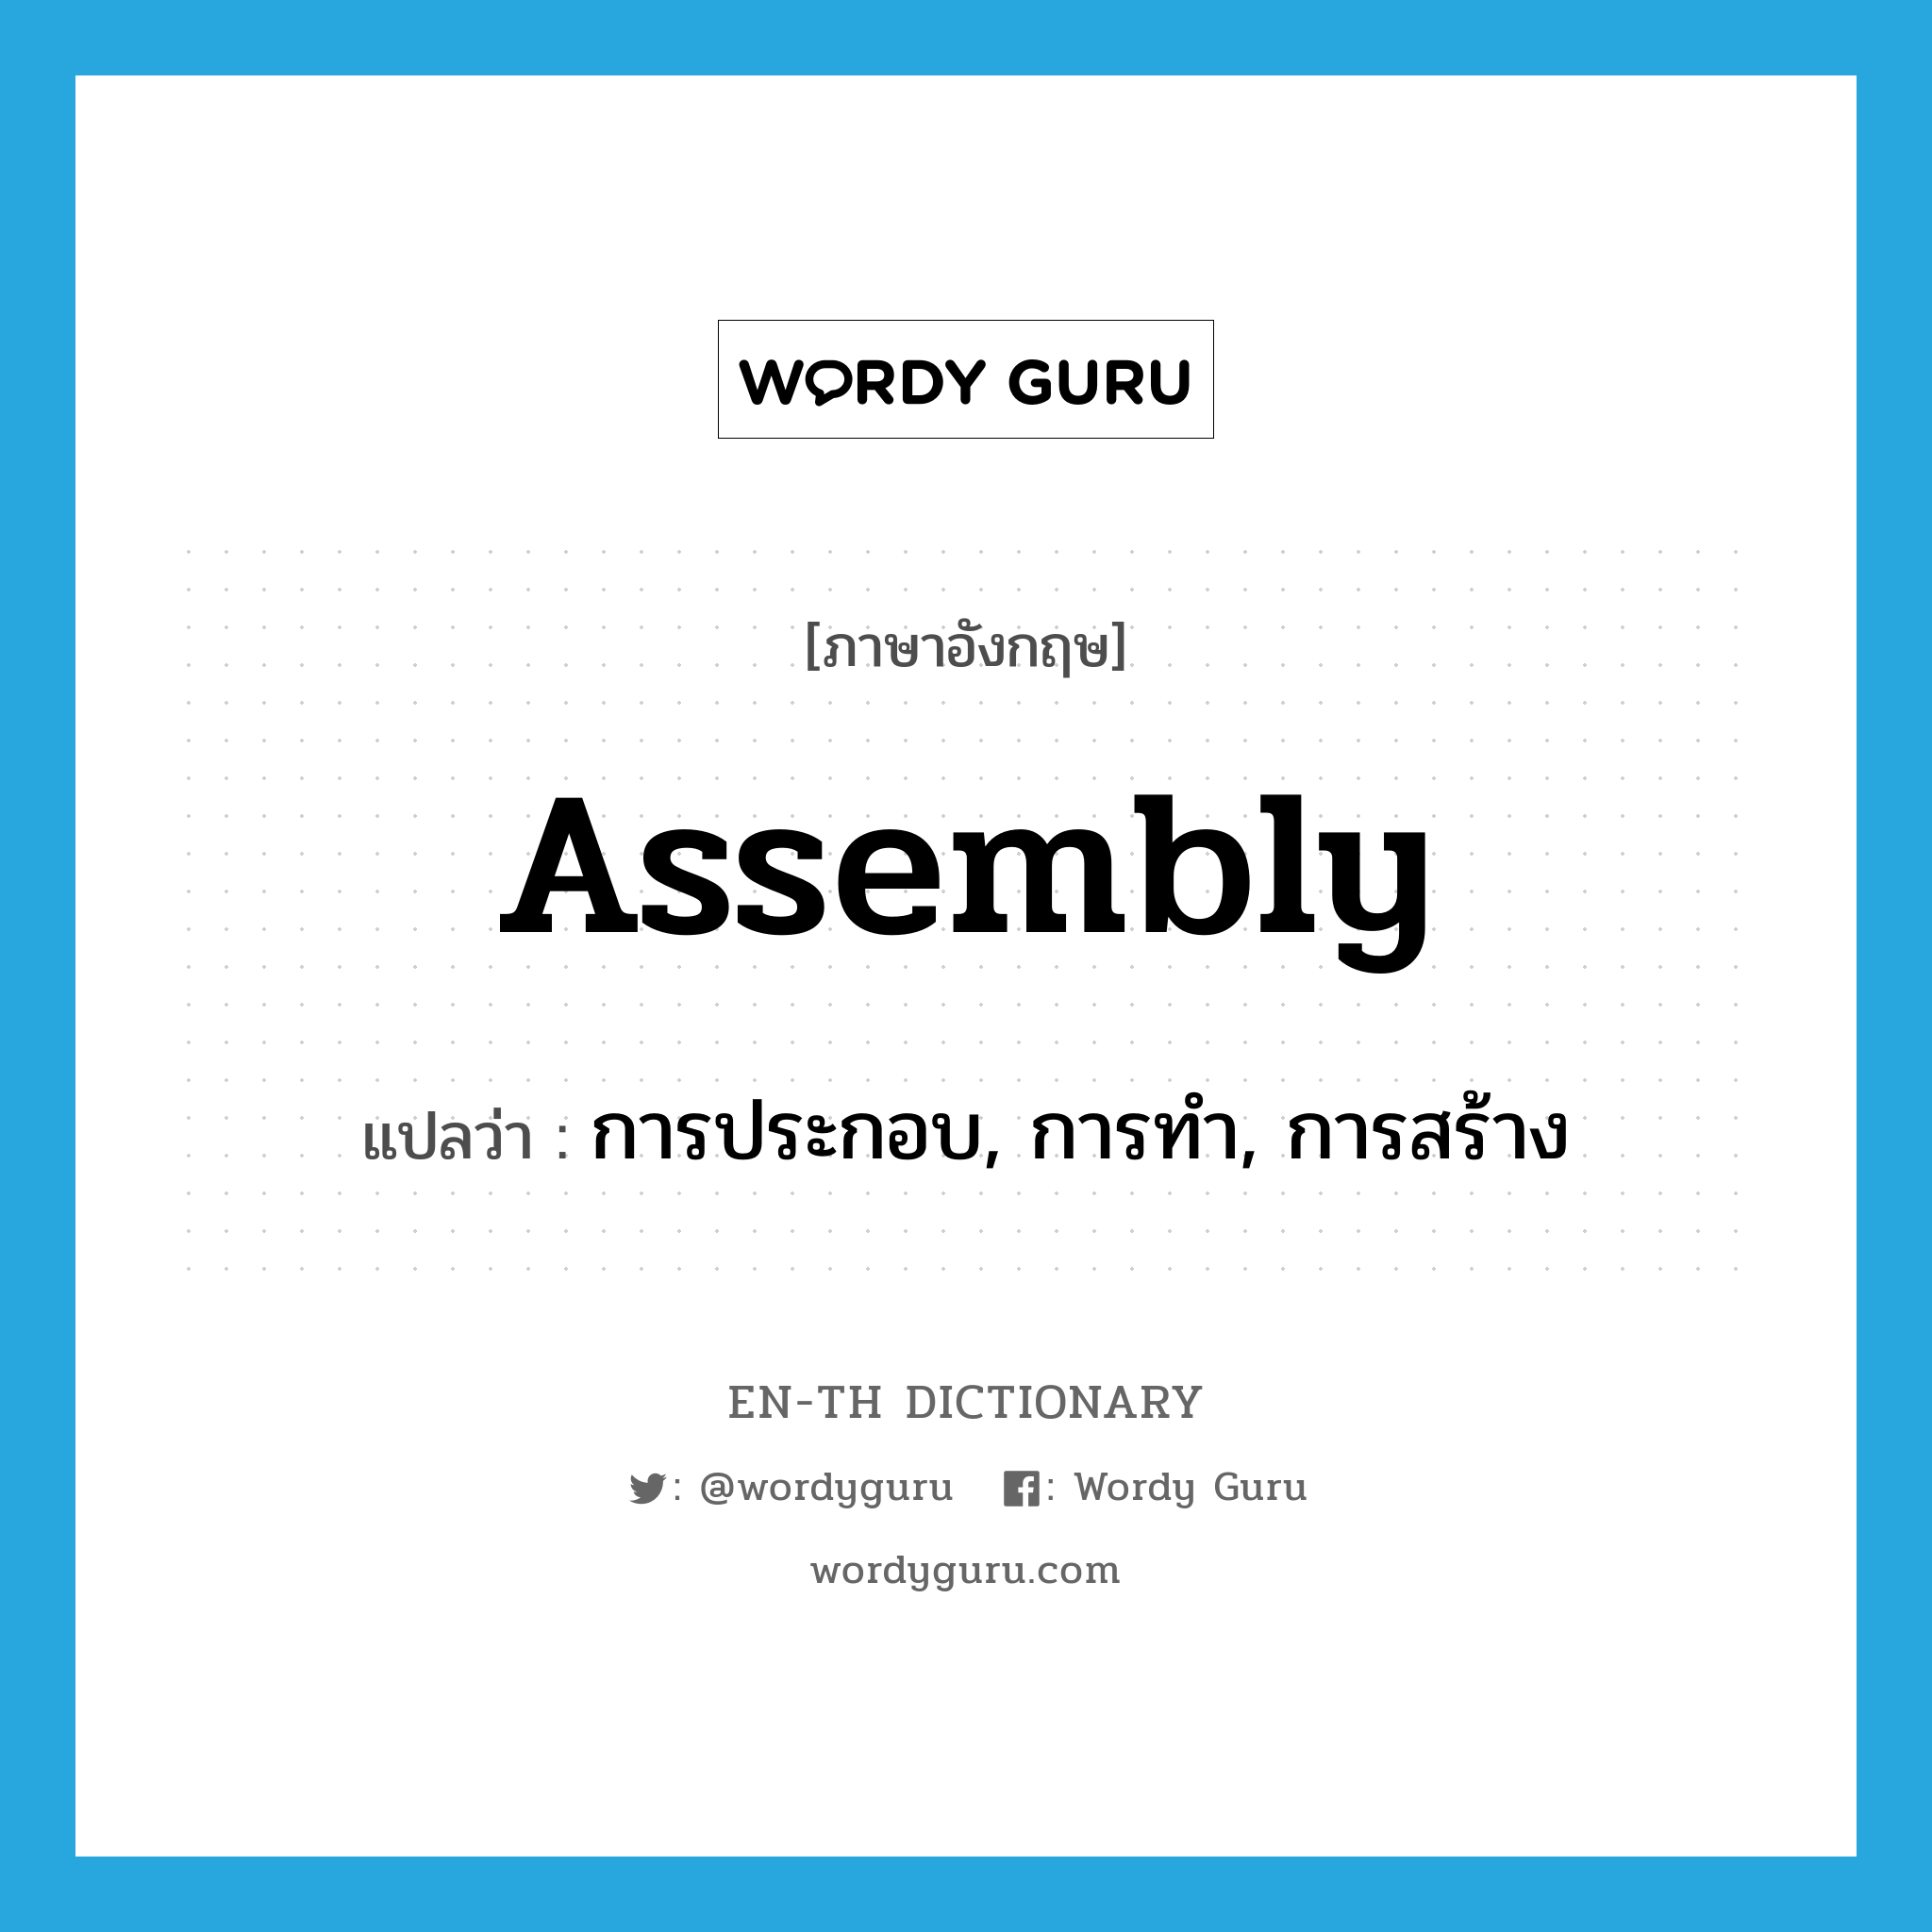 การประกอบ, การทำ, การสร้าง ภาษาอังกฤษ?, คำศัพท์ภาษาอังกฤษ การประกอบ, การทำ, การสร้าง แปลว่า assembly ประเภท N หมวด N